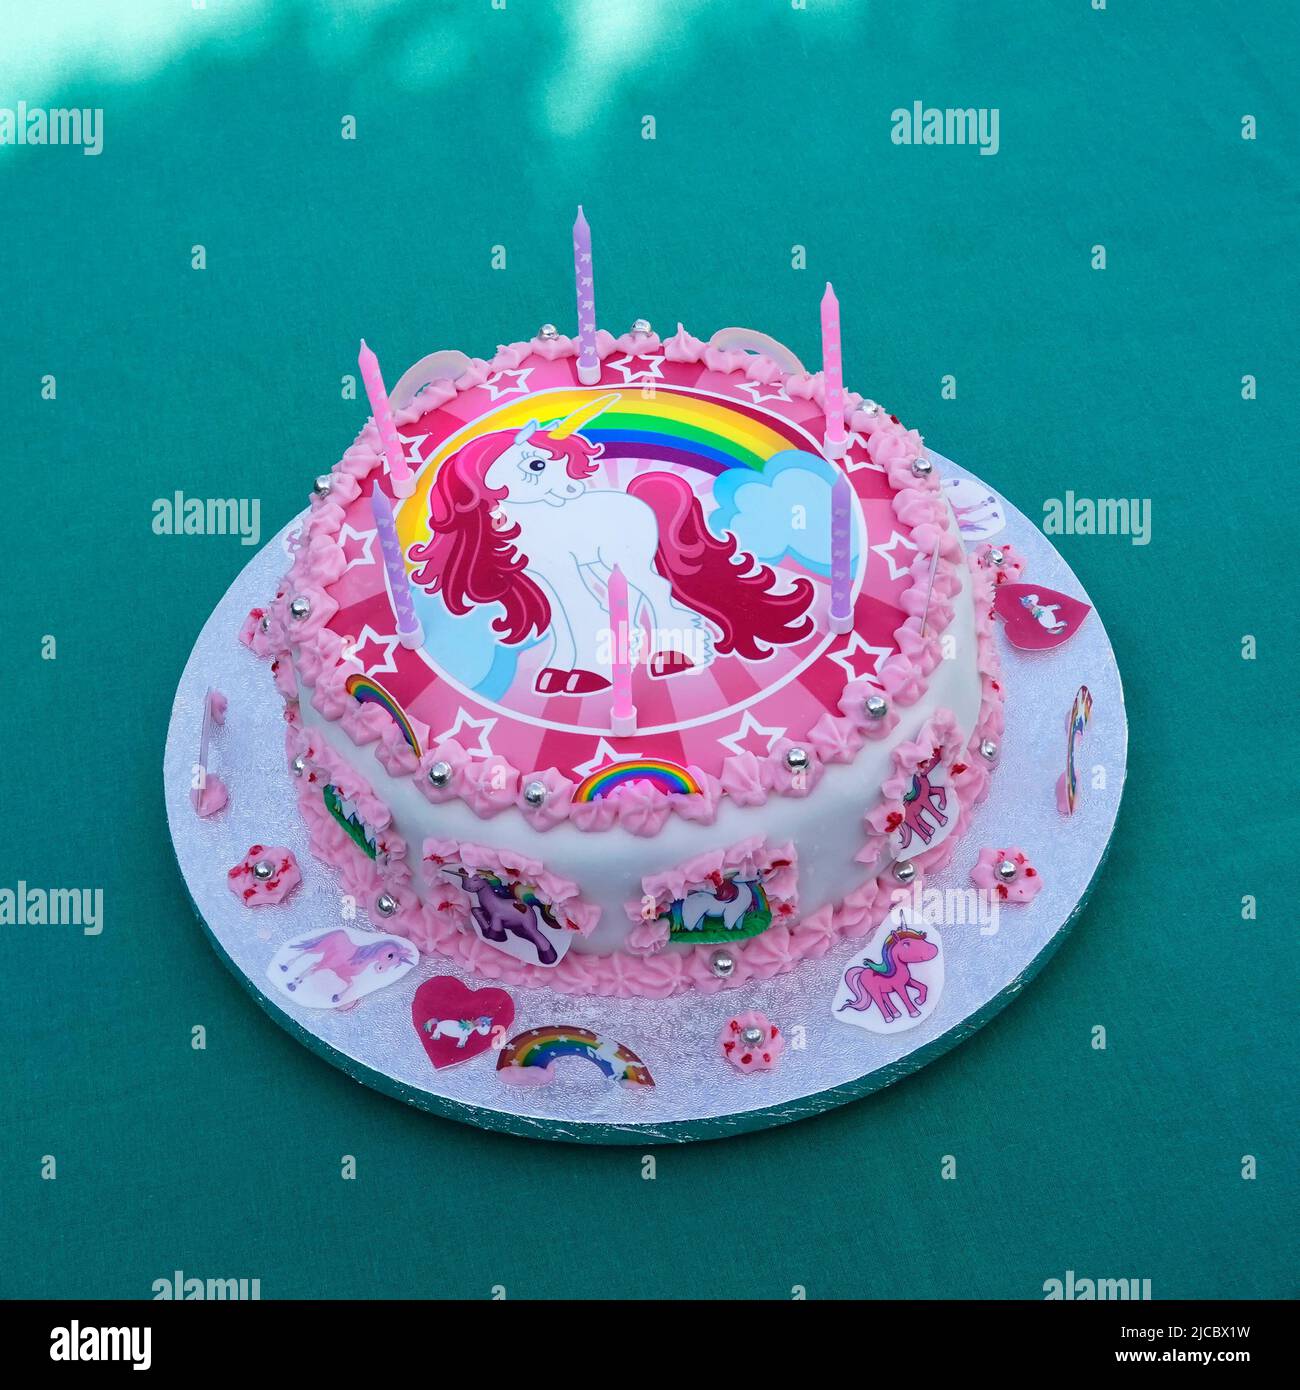 Torta di compleanno fatta in casa per ragazze di sei anni con tema unicorno decorata con arcobaleni stelle cuori candele rosa e bianca ciliegina su tavola torta d'argento UK Foto Stock